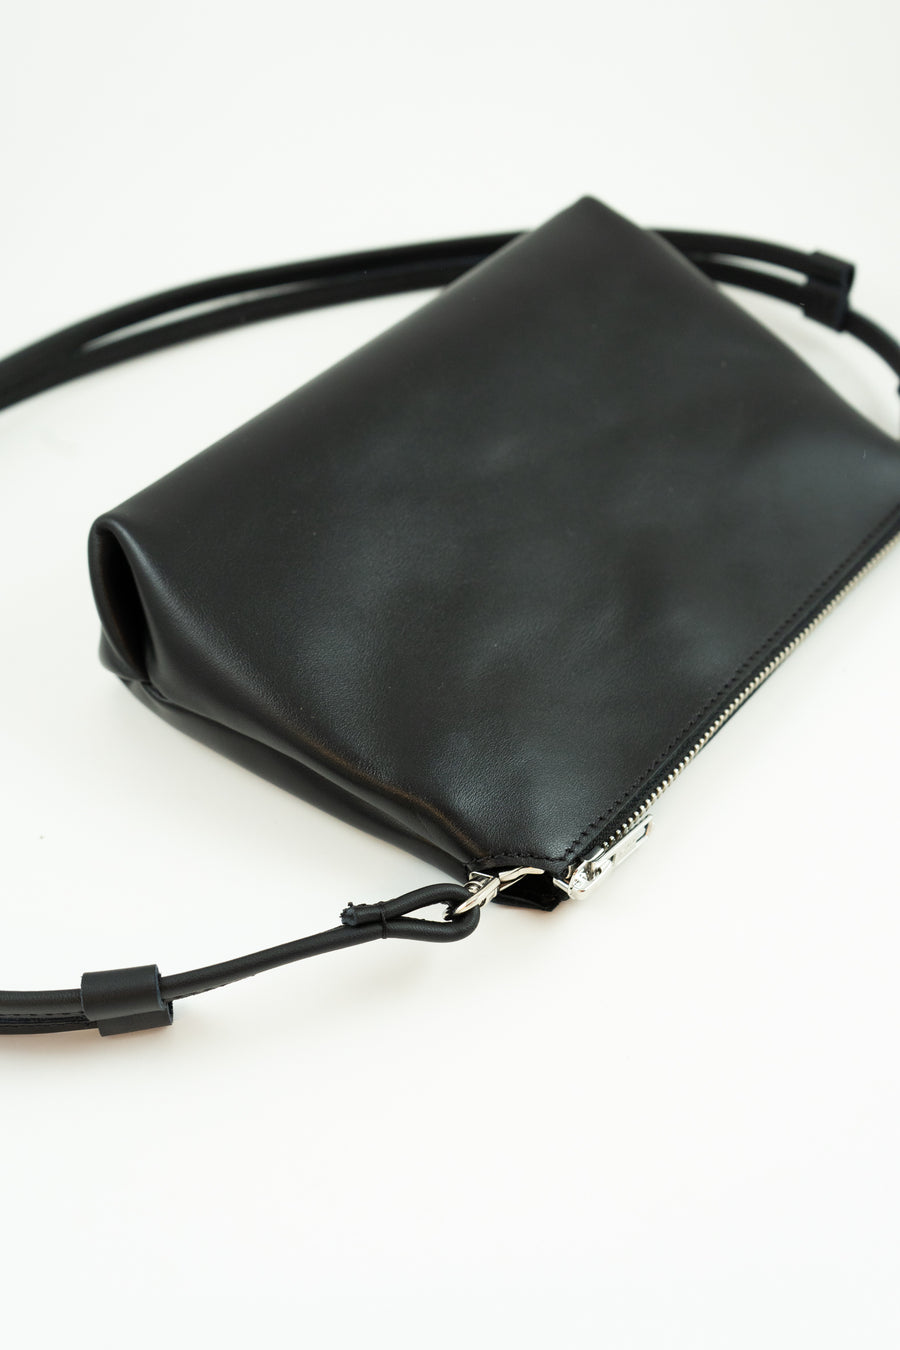 BELA shoulder bag – black